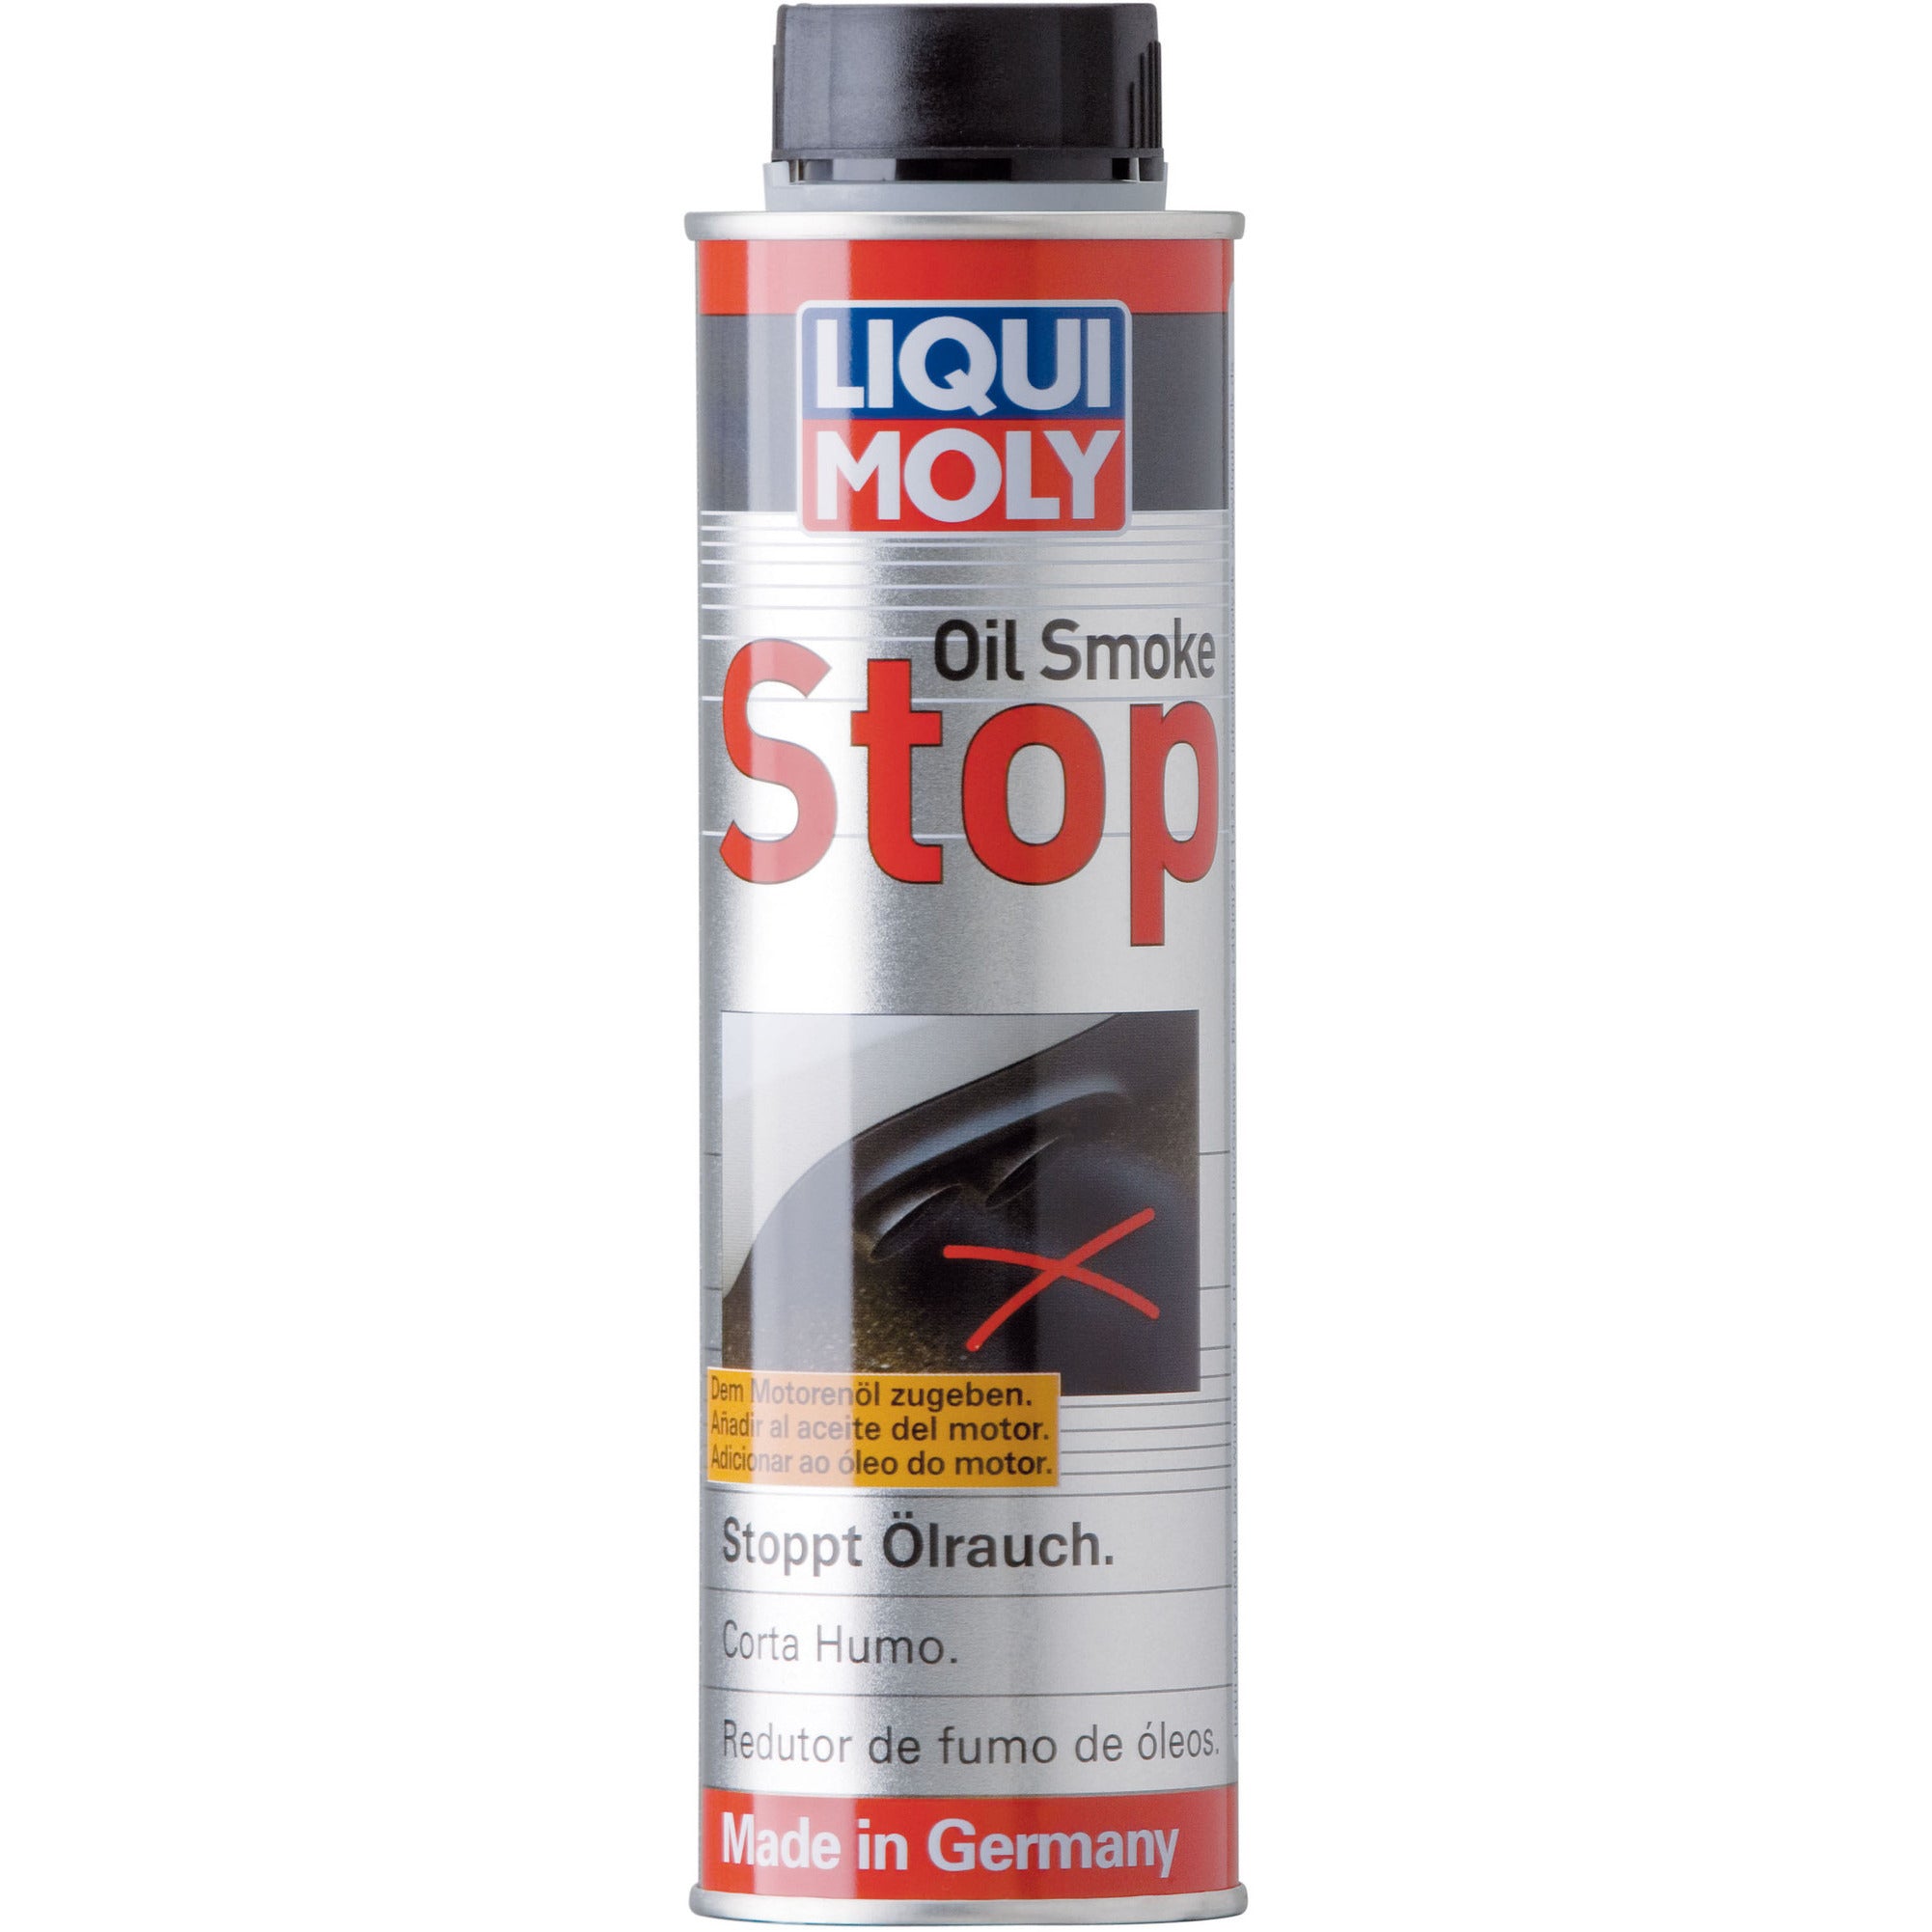 Liqui Moly Oil Smoke Stop (300 ml)